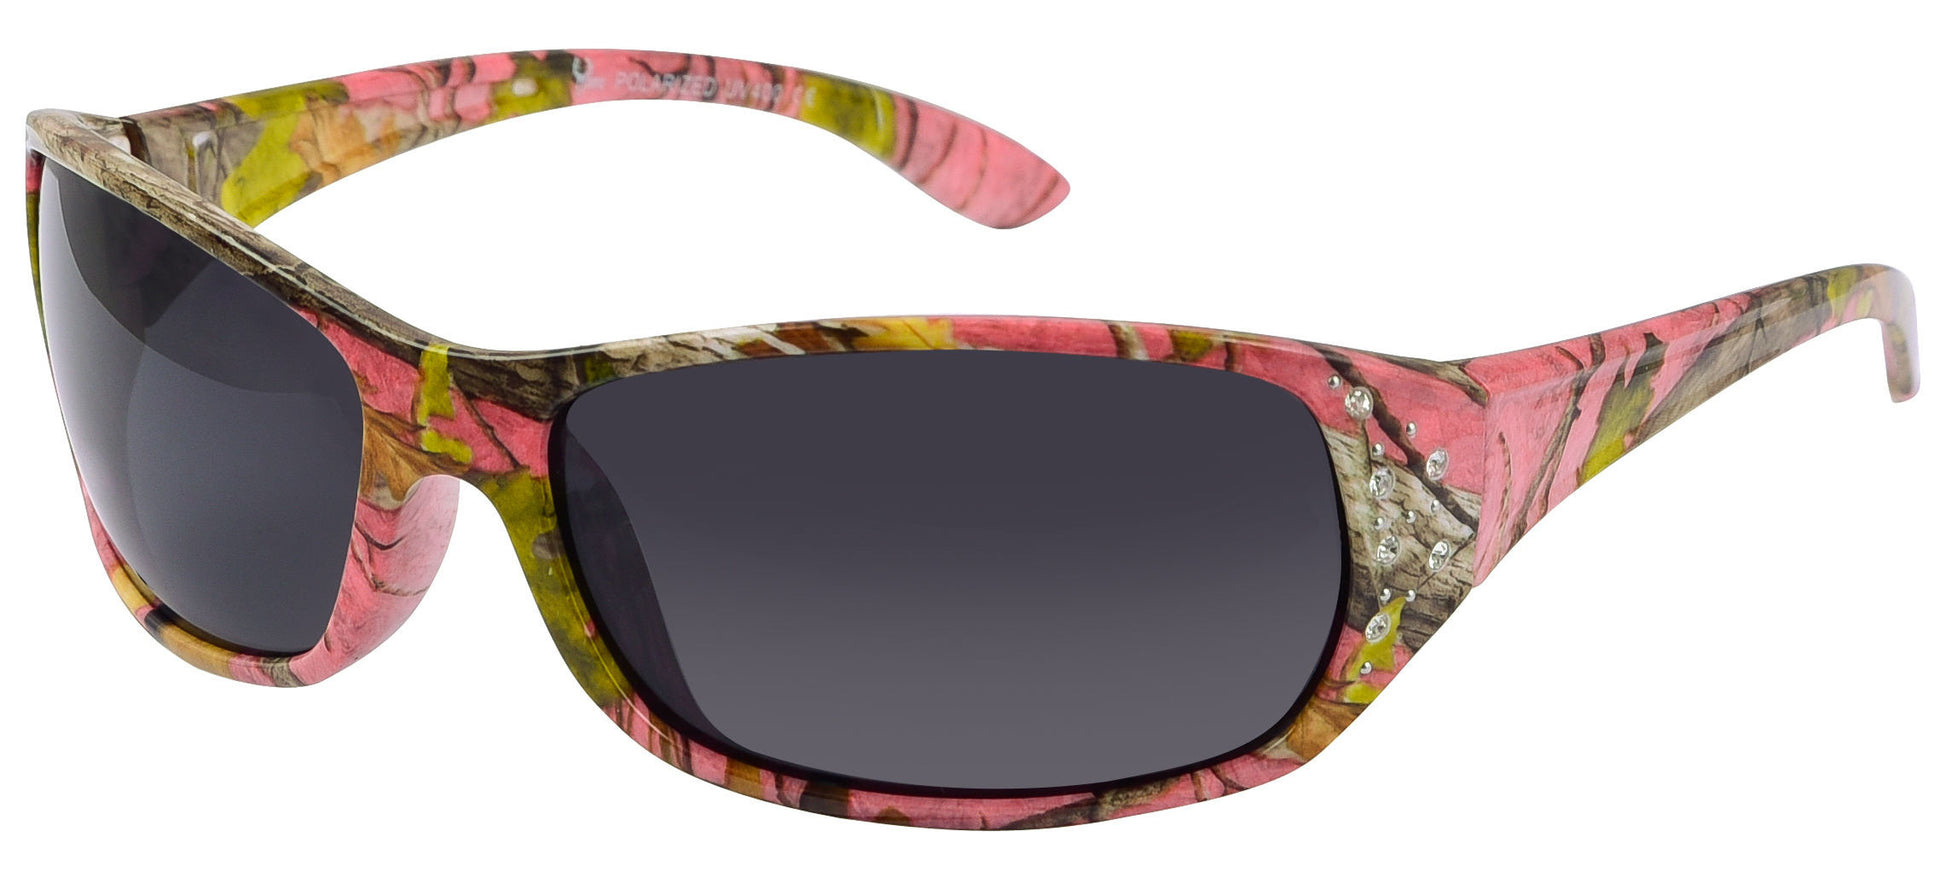 Polarized Pink Camo Sunglasses for Women - Elettra - Pink Camo Frame -  Smoke Lens – Hornz Camo